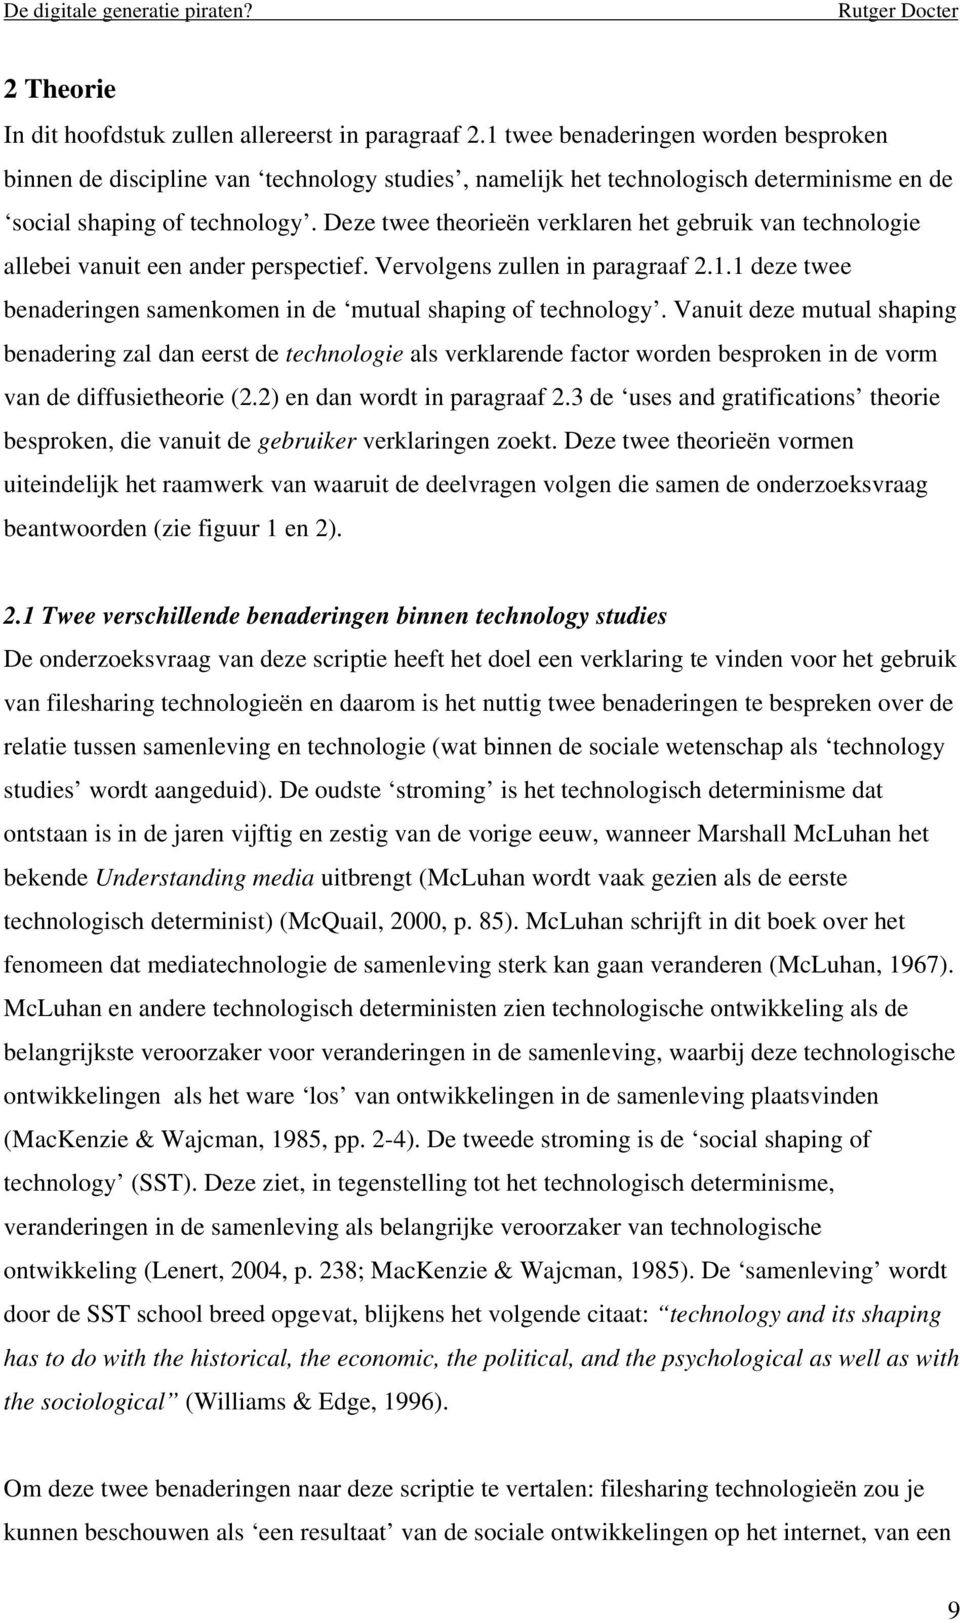 Deze twee theorieën verklaren het gebruik van technologie allebei vanuit een ander perspectief. Vervolgens zullen in paragraaf 2.1.